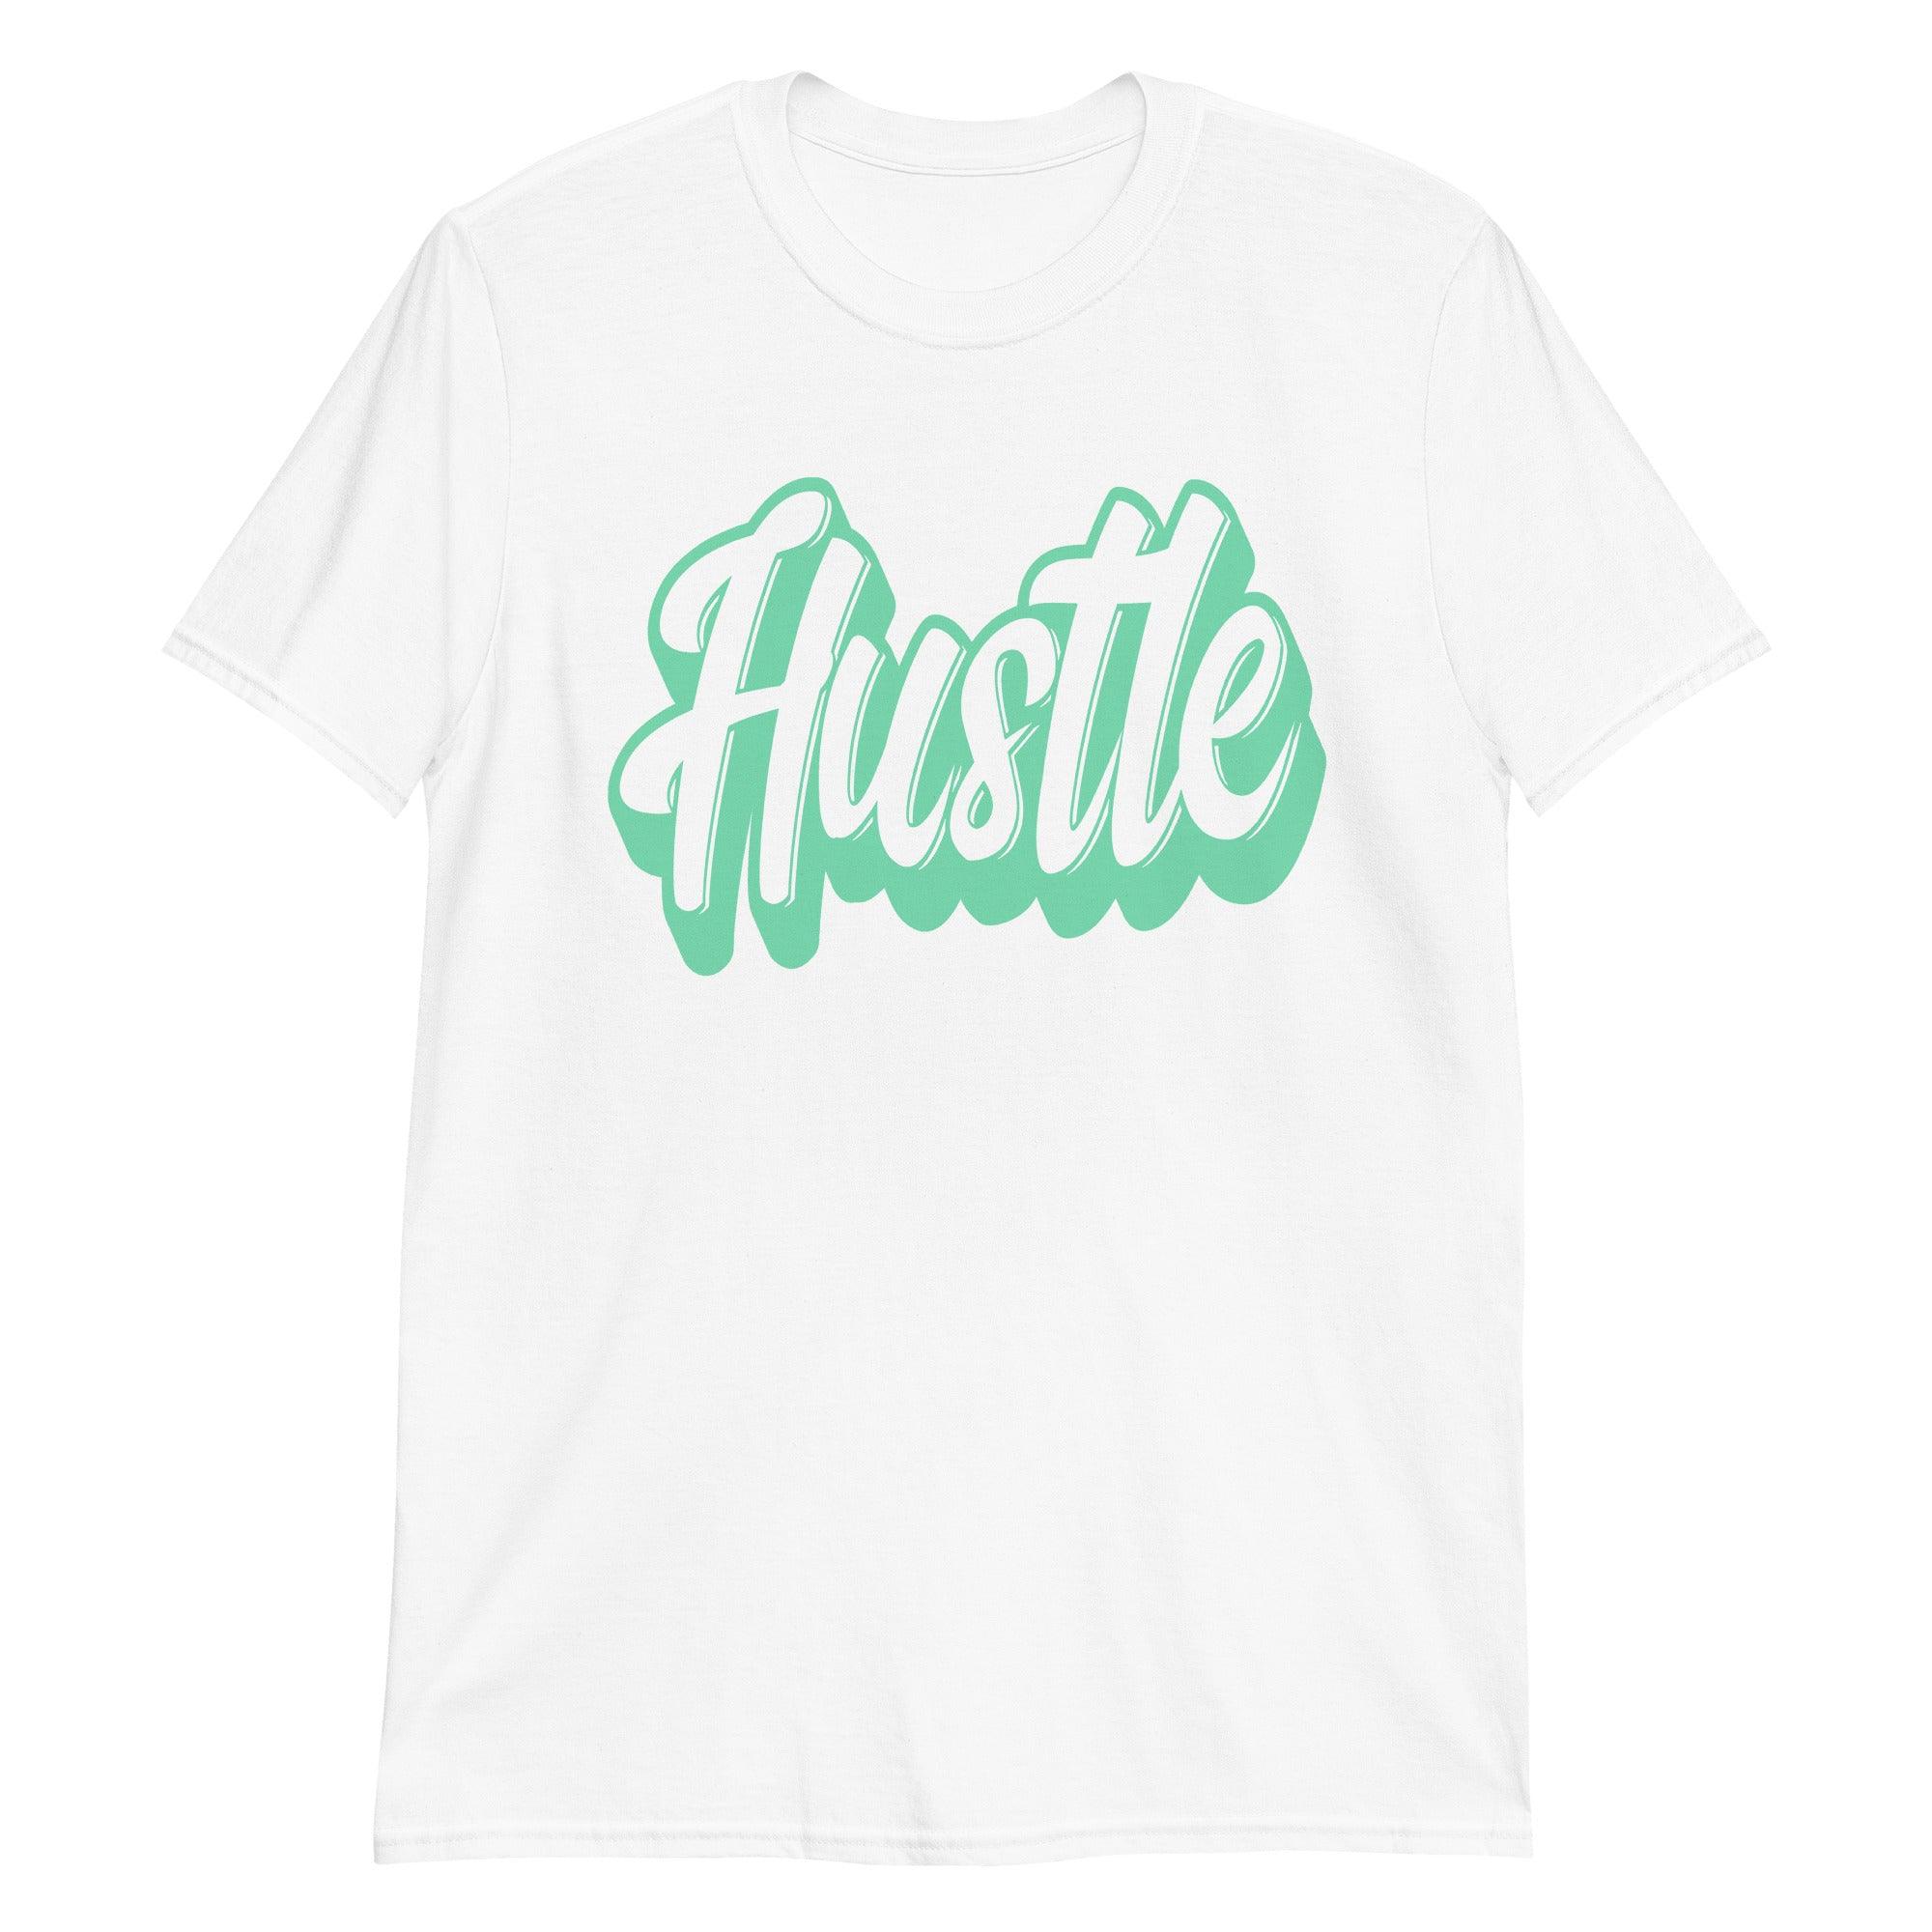 Hustle Sneaker Tee Nike Dunks Low Green Glow photo